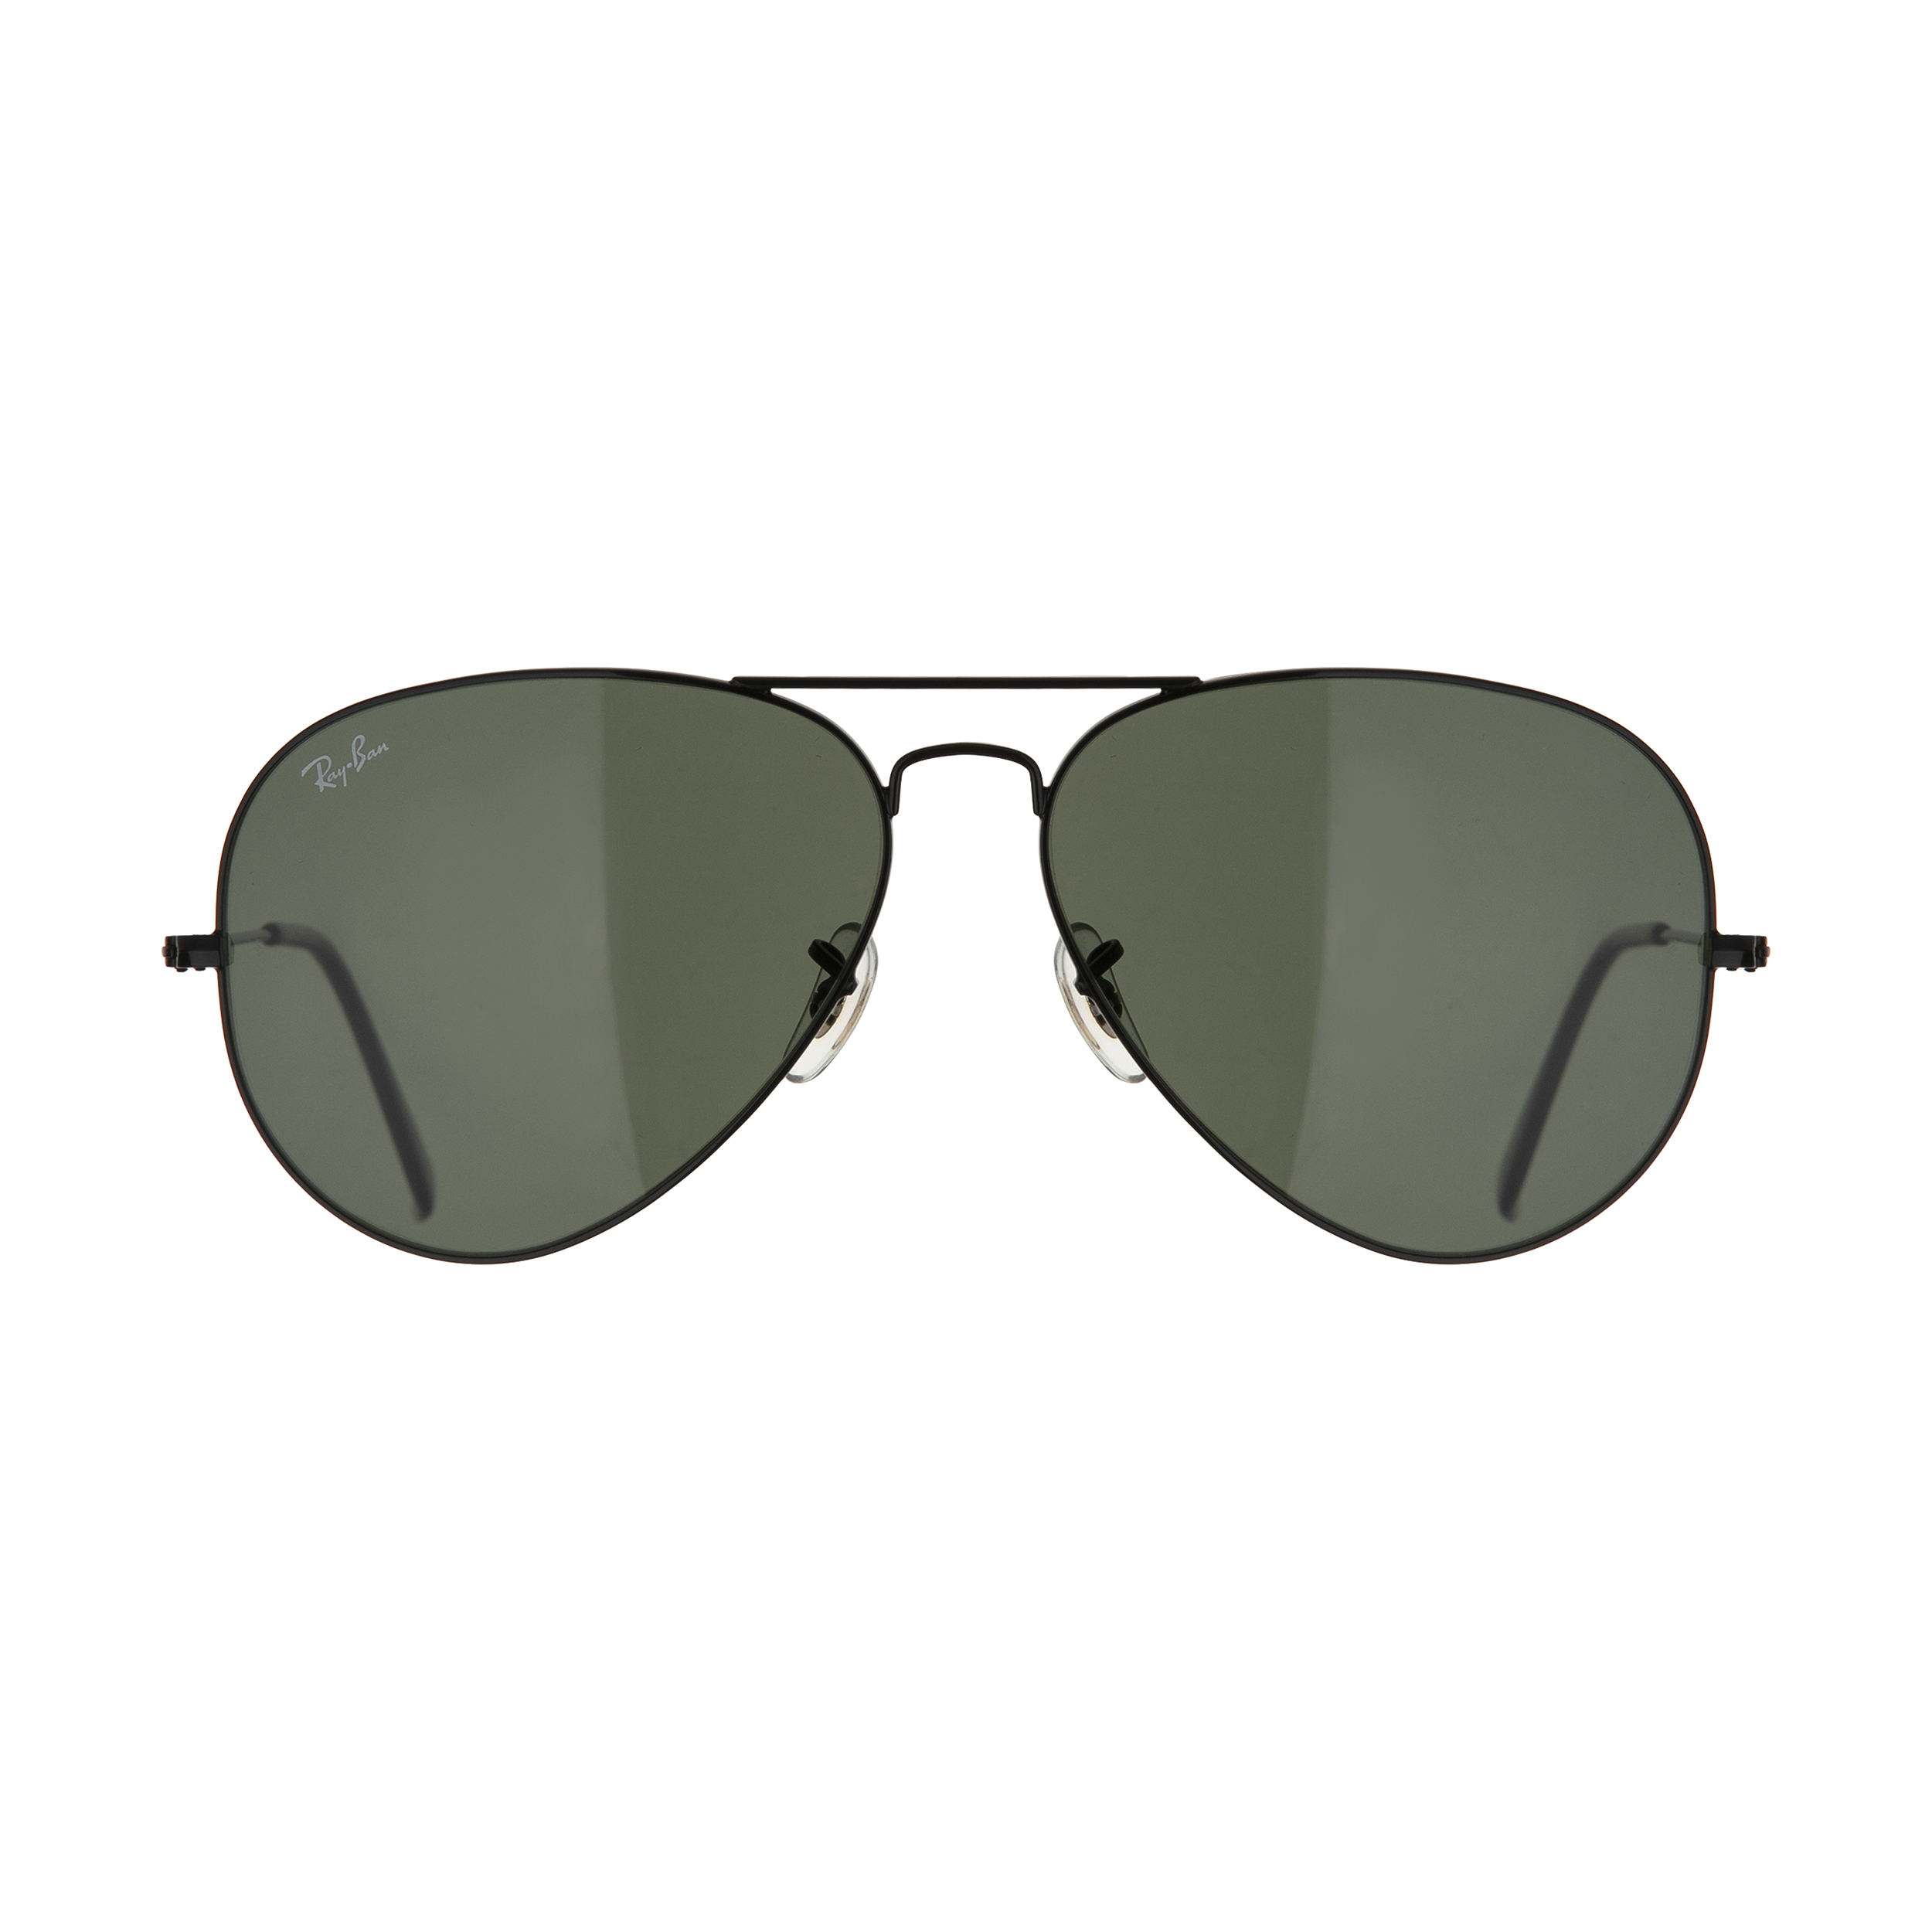 نکته خرید - قیمت روز عینک آفتابی ری بن مدل 3026 L2821-62 خرید